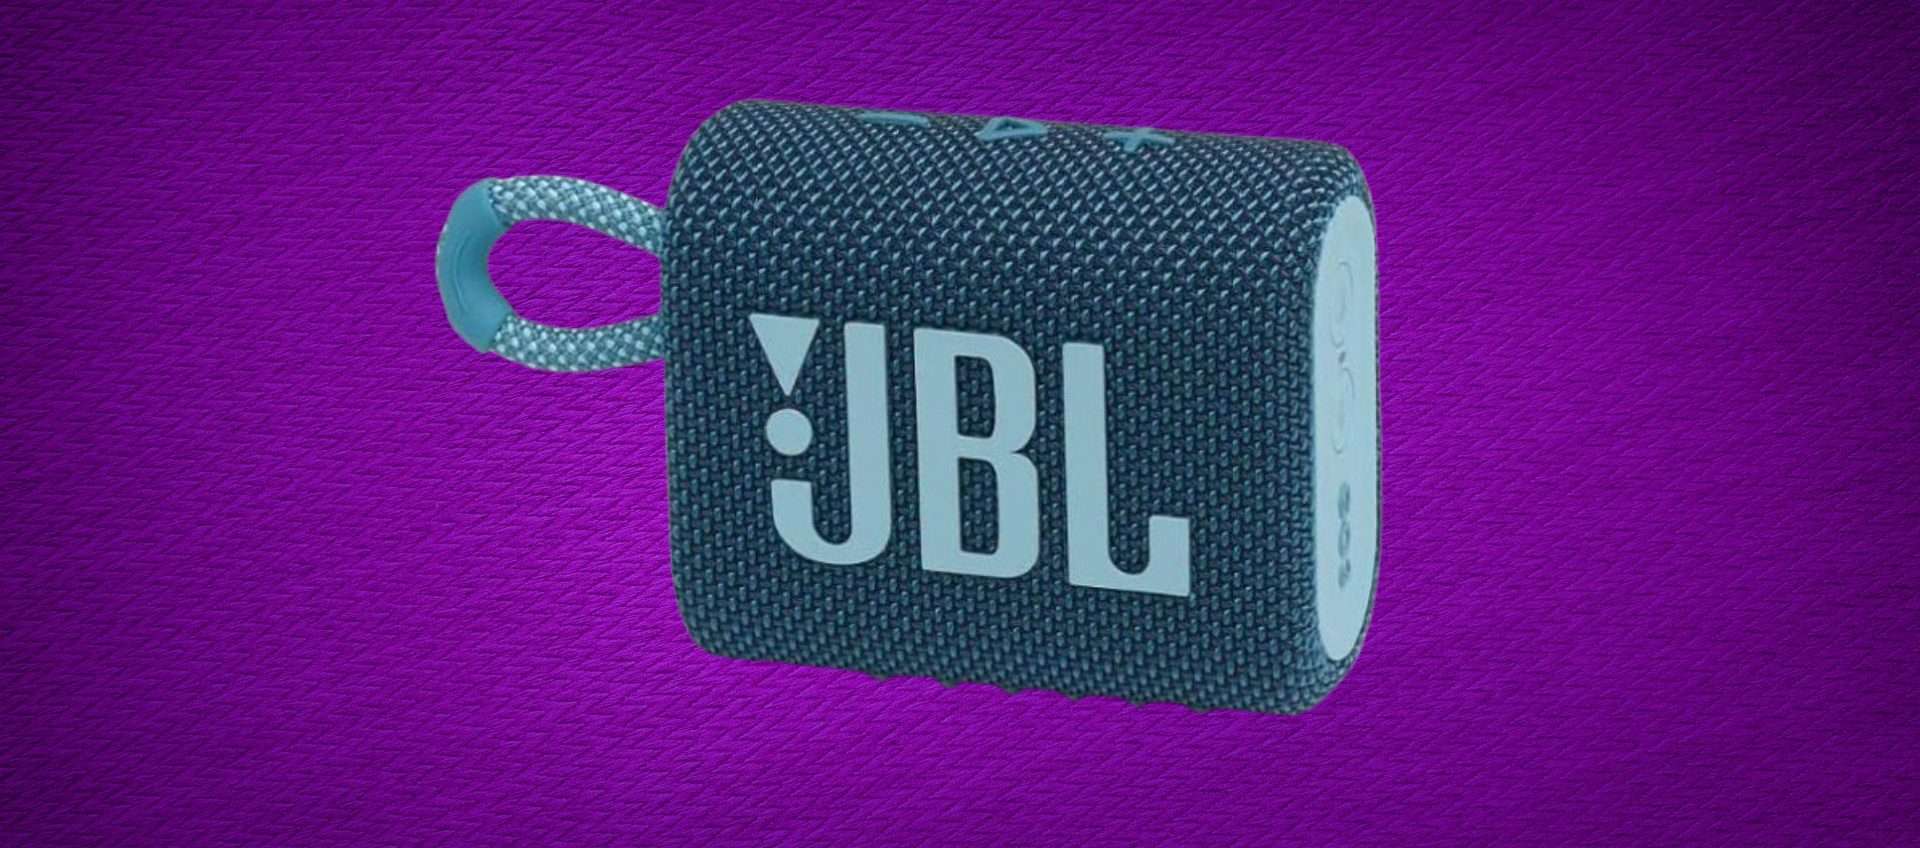 Solo 25,99€ per il JBL Go 3: con lo sconto del 42% è praticamente regalato